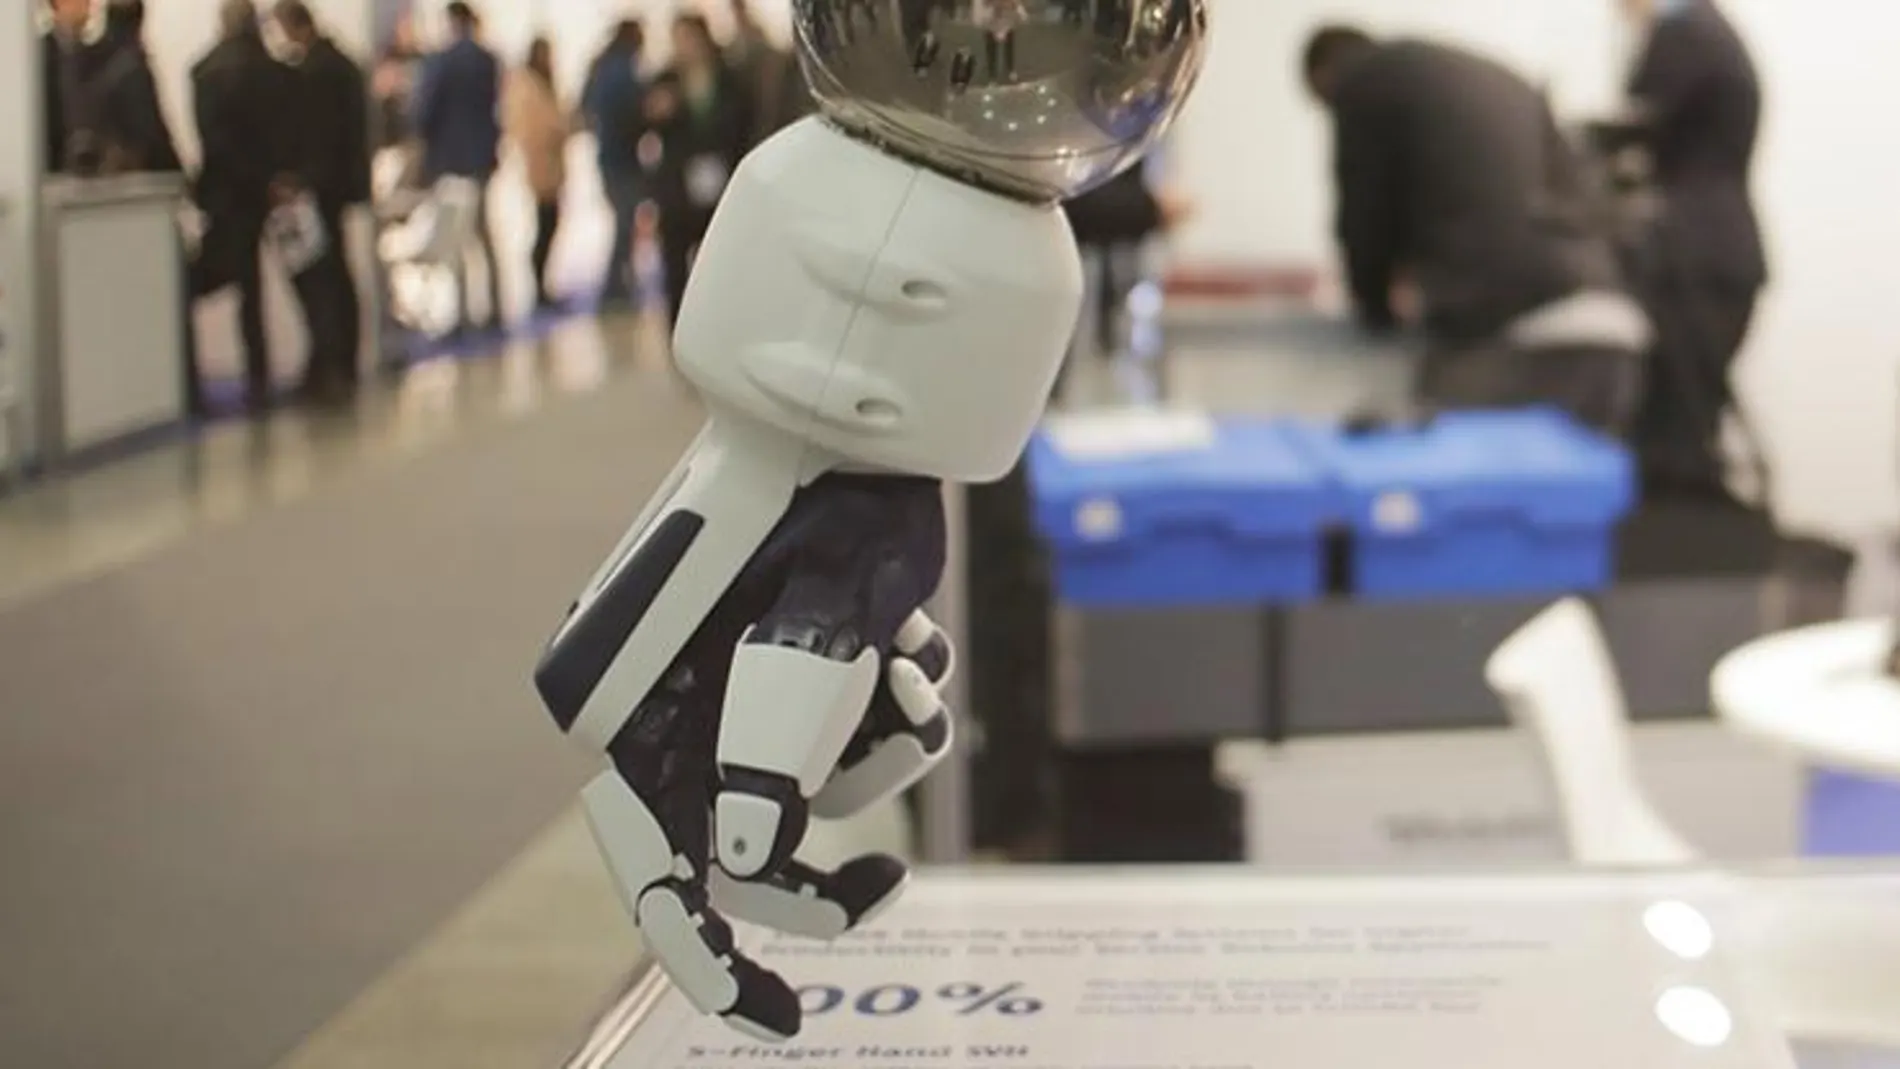 La llamada robótica de servicio será una de las protagonistas de la exposición